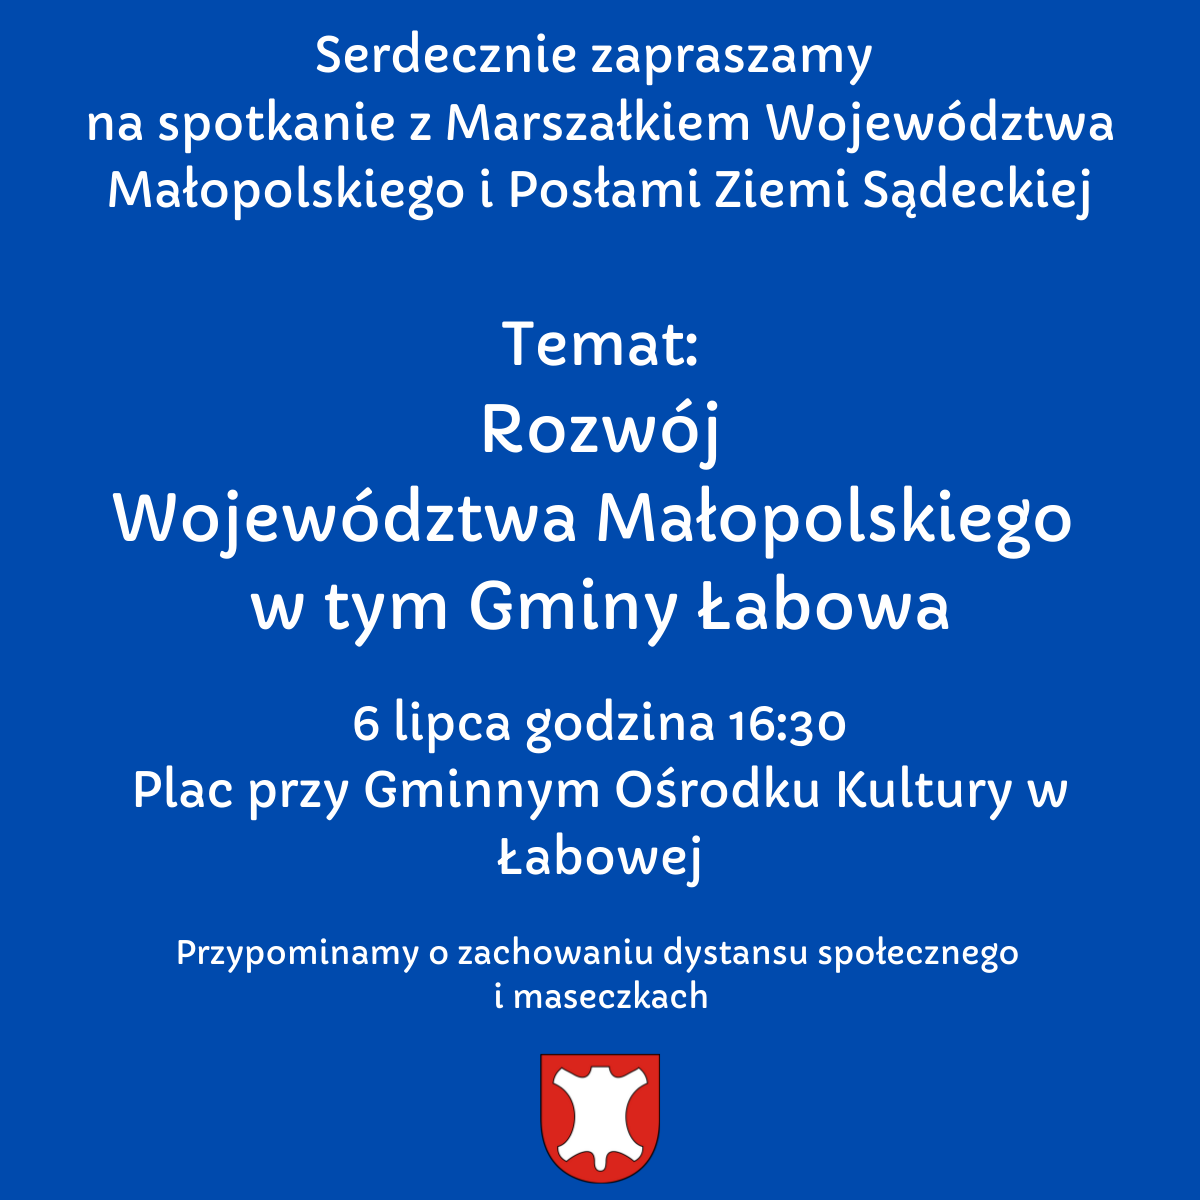 Serdecznie zapraszamy  na spotkanie z Marszałkiem Województwa Małopolskiego i Posłami Ziemi Sądeckiej